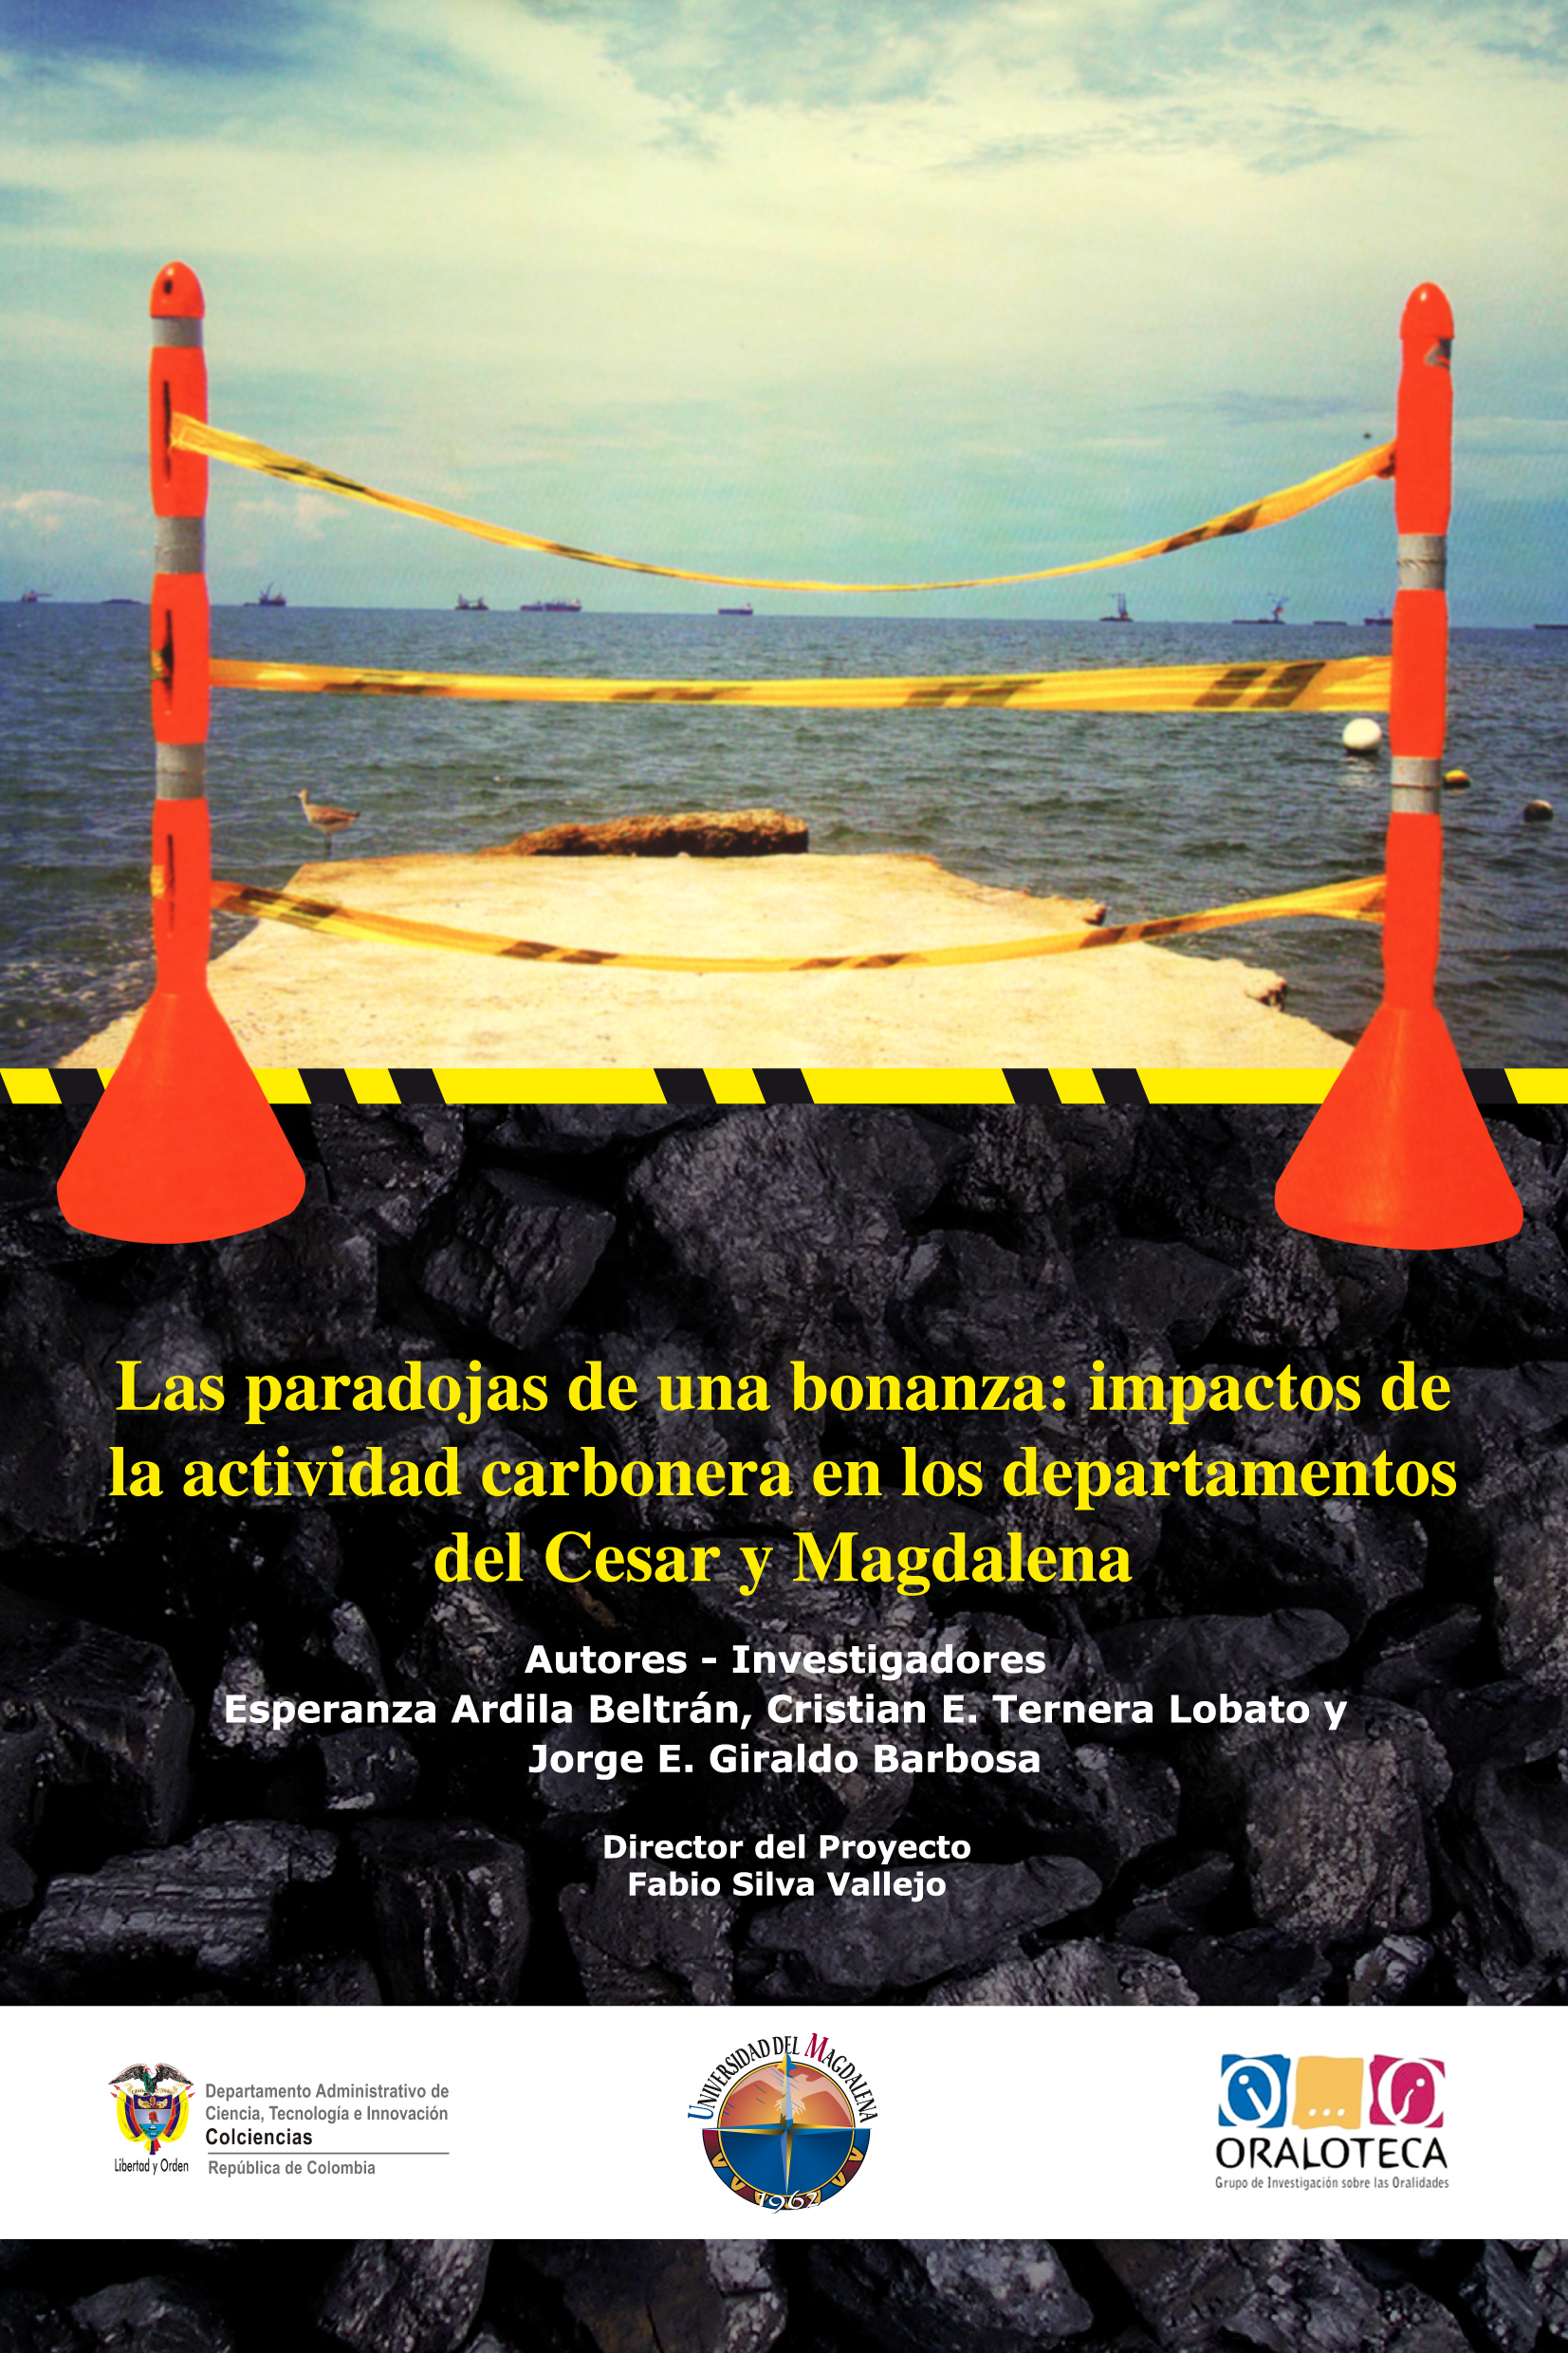 Las paradojas de una bonanza: impactos de la actividad carbonera en los departamentos del Cesar y Magdalena